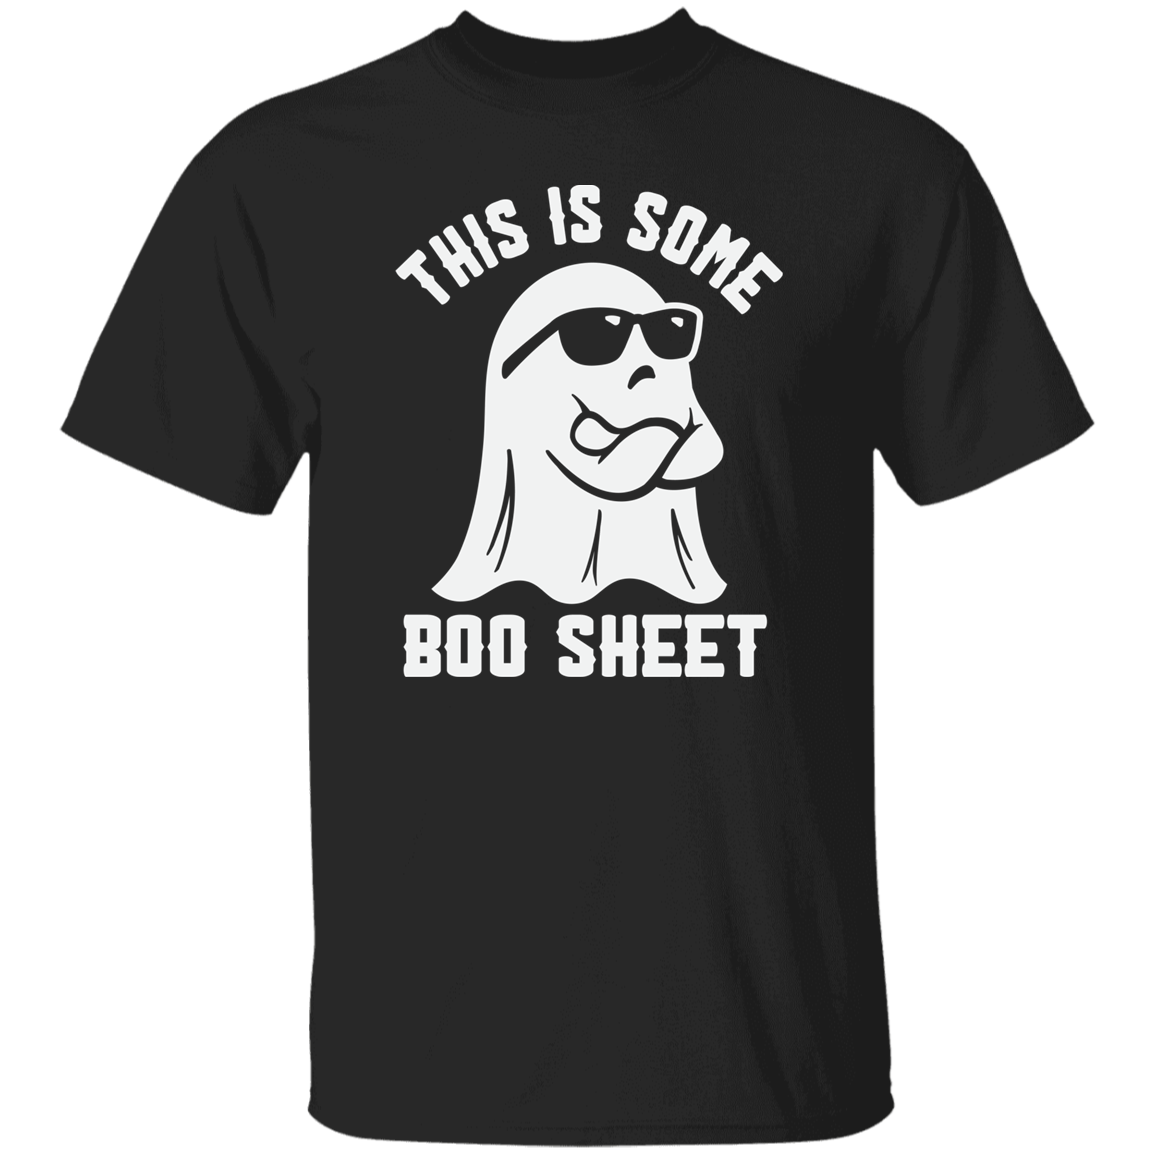 Boo Sheet 5.3 oz. T-Shirt